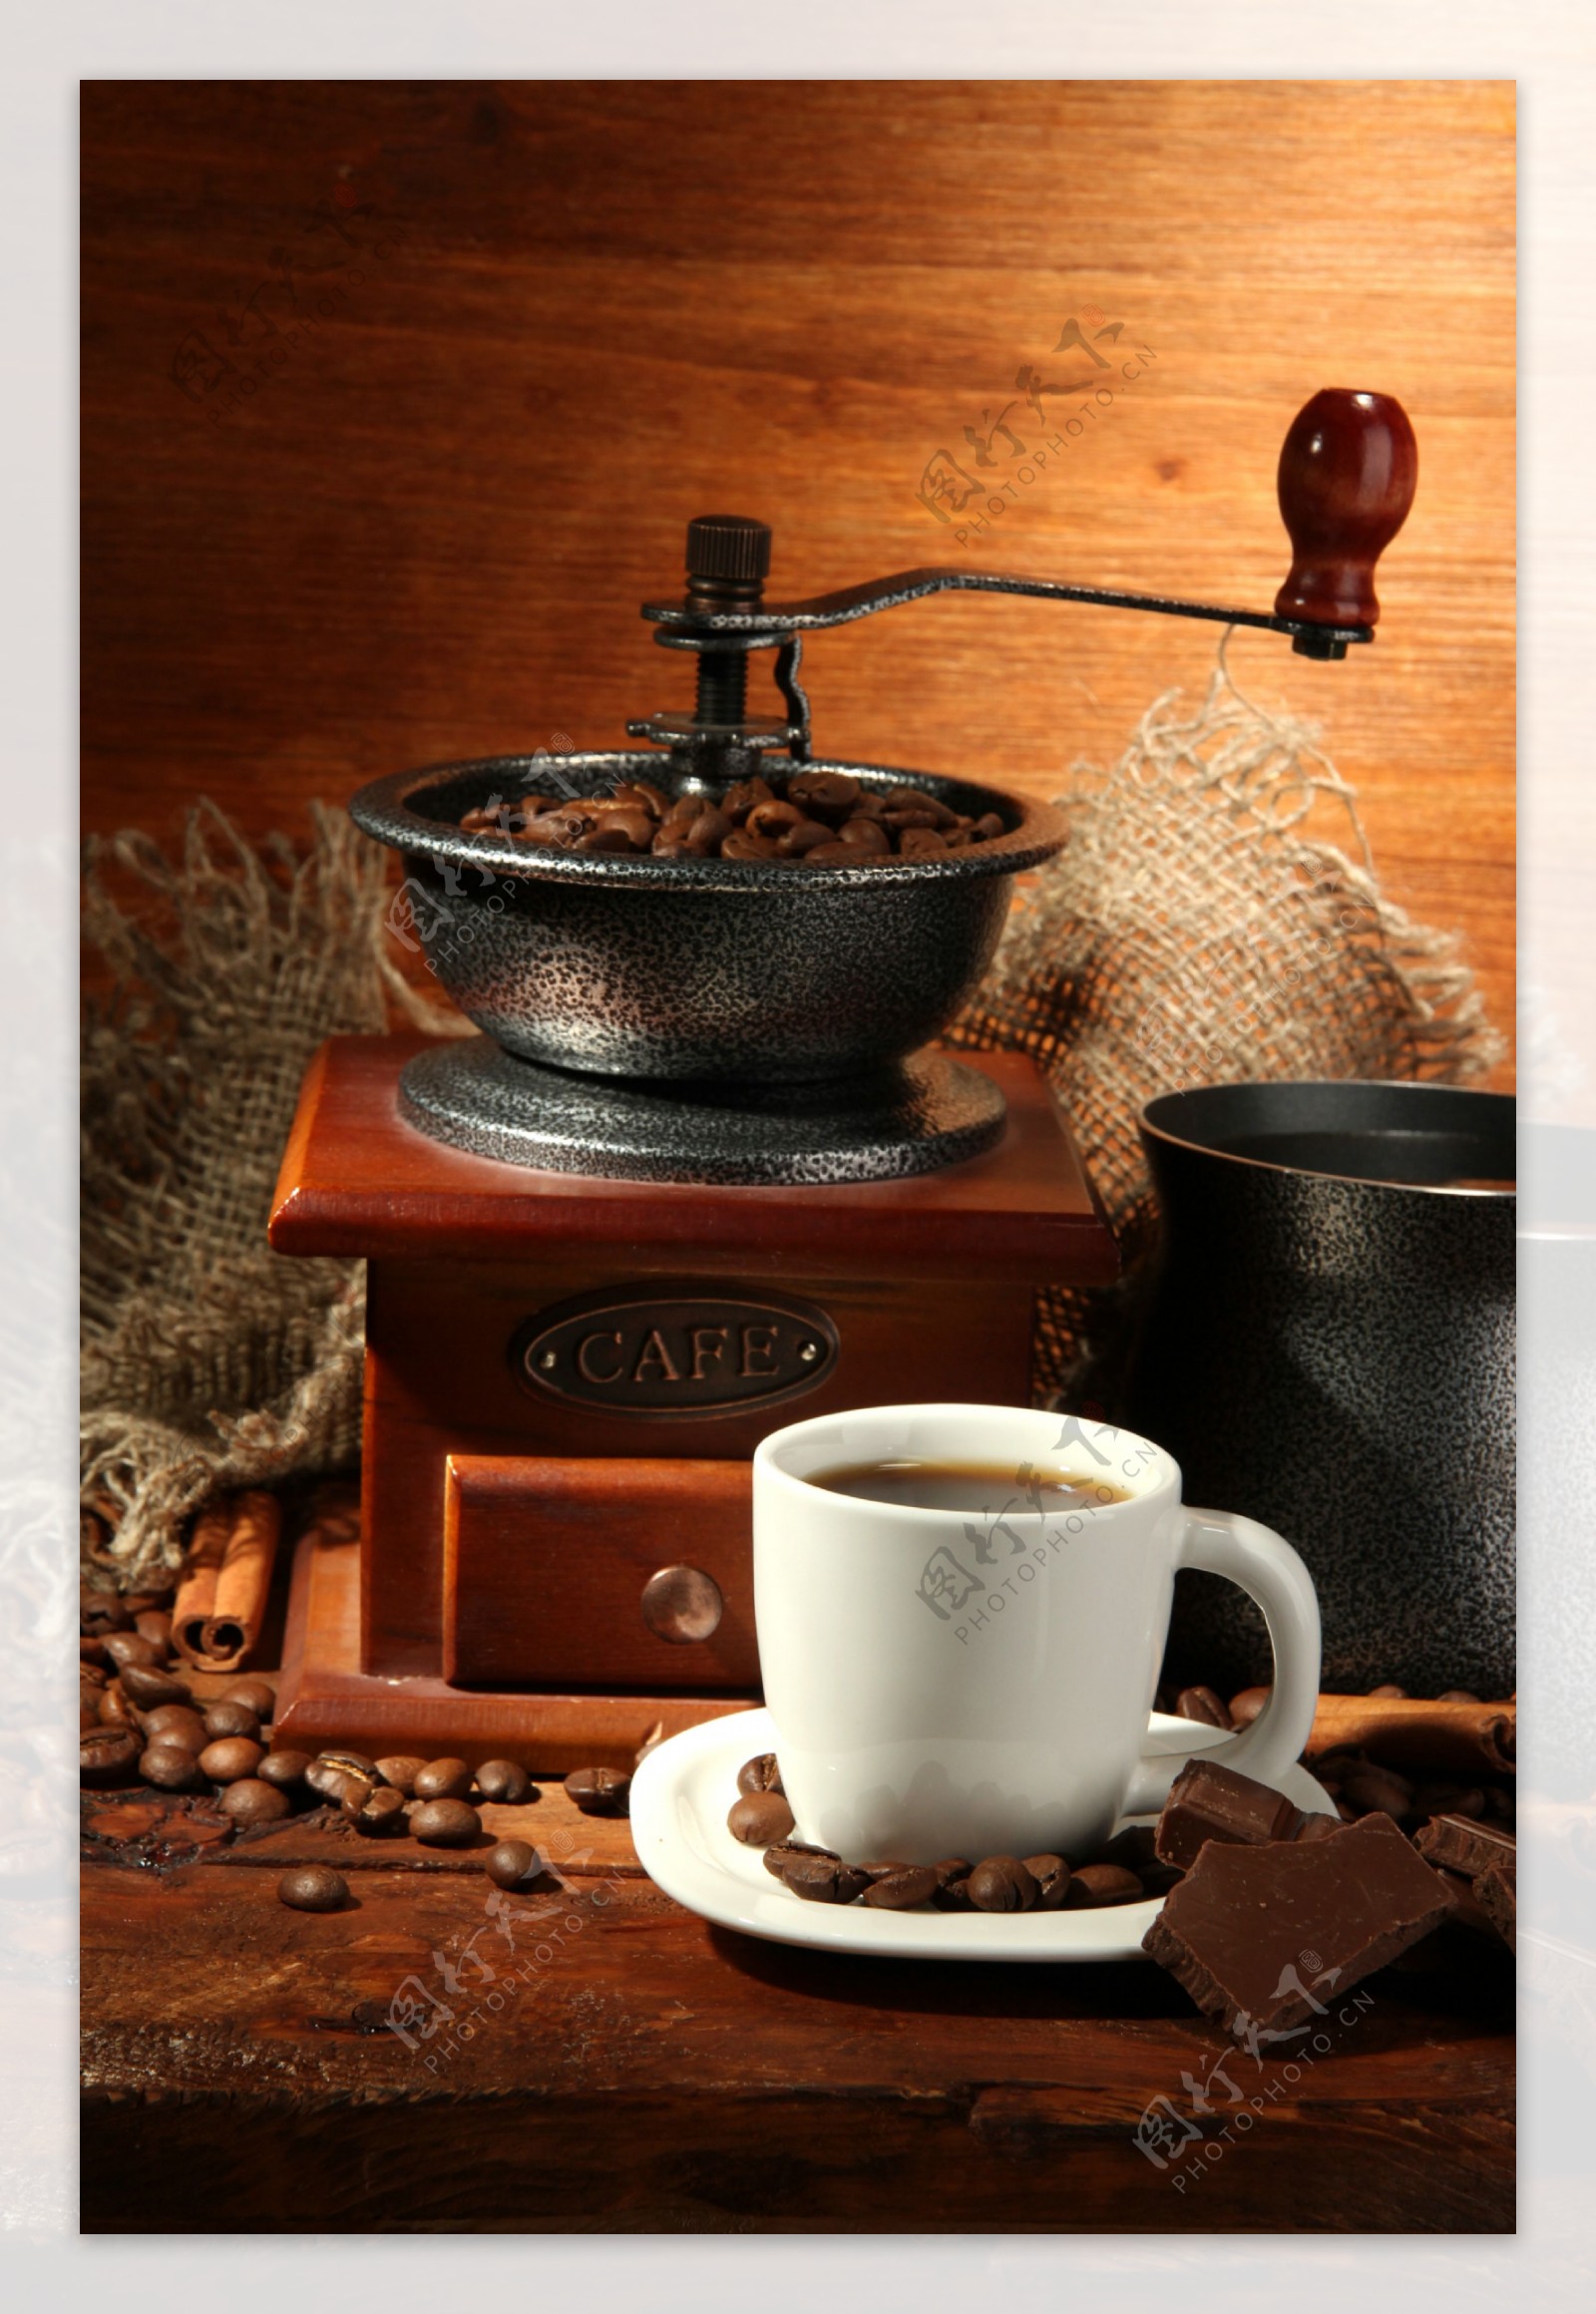 咖啡与咖啡研磨机